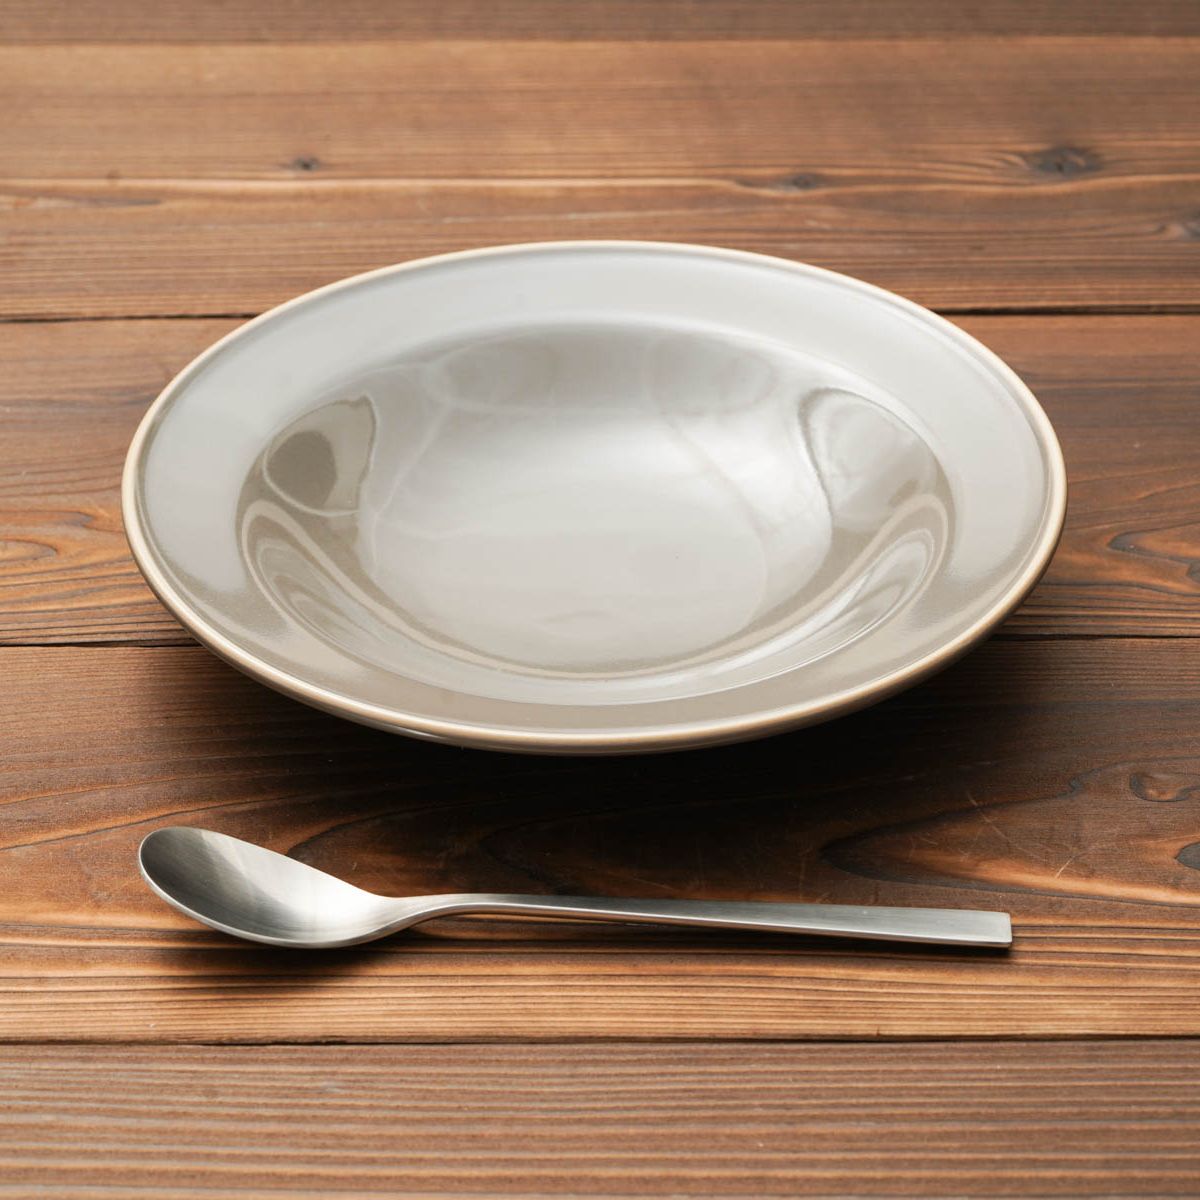 チャコール 21.5cm 深皿 プレート6.3深皿 丸皿 日本製 美濃焼 和食器 カレー皿 パスタ皿 おしゃれ